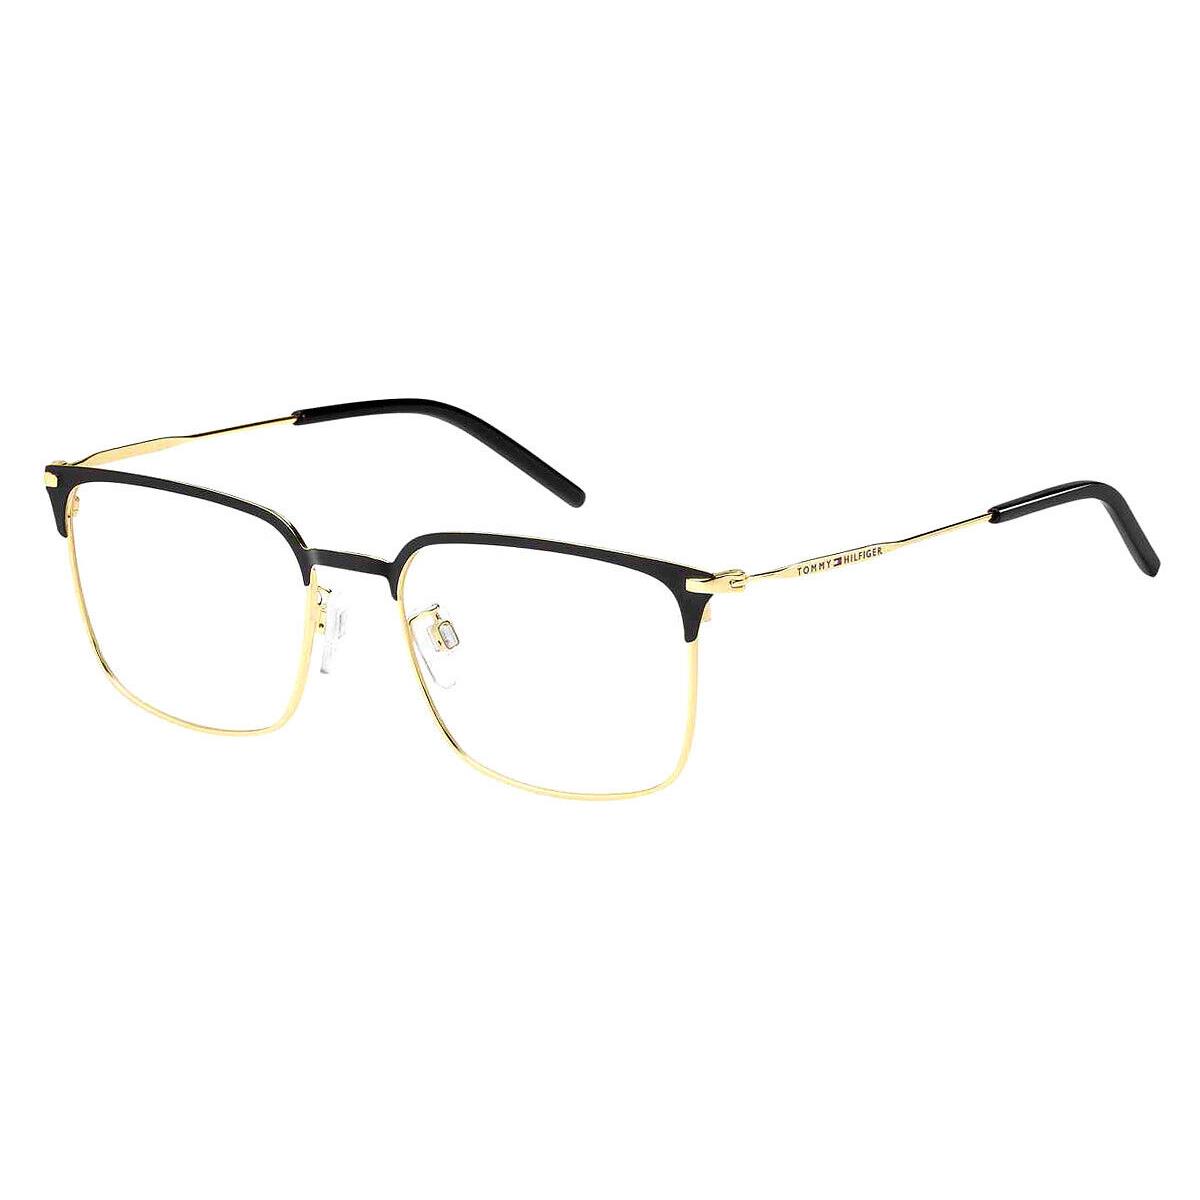 Tommy Hilfiger Thf Eyeglasses Men Matte Black Gold 54mm - Frame: Matte Black Gold, Lens: Demo